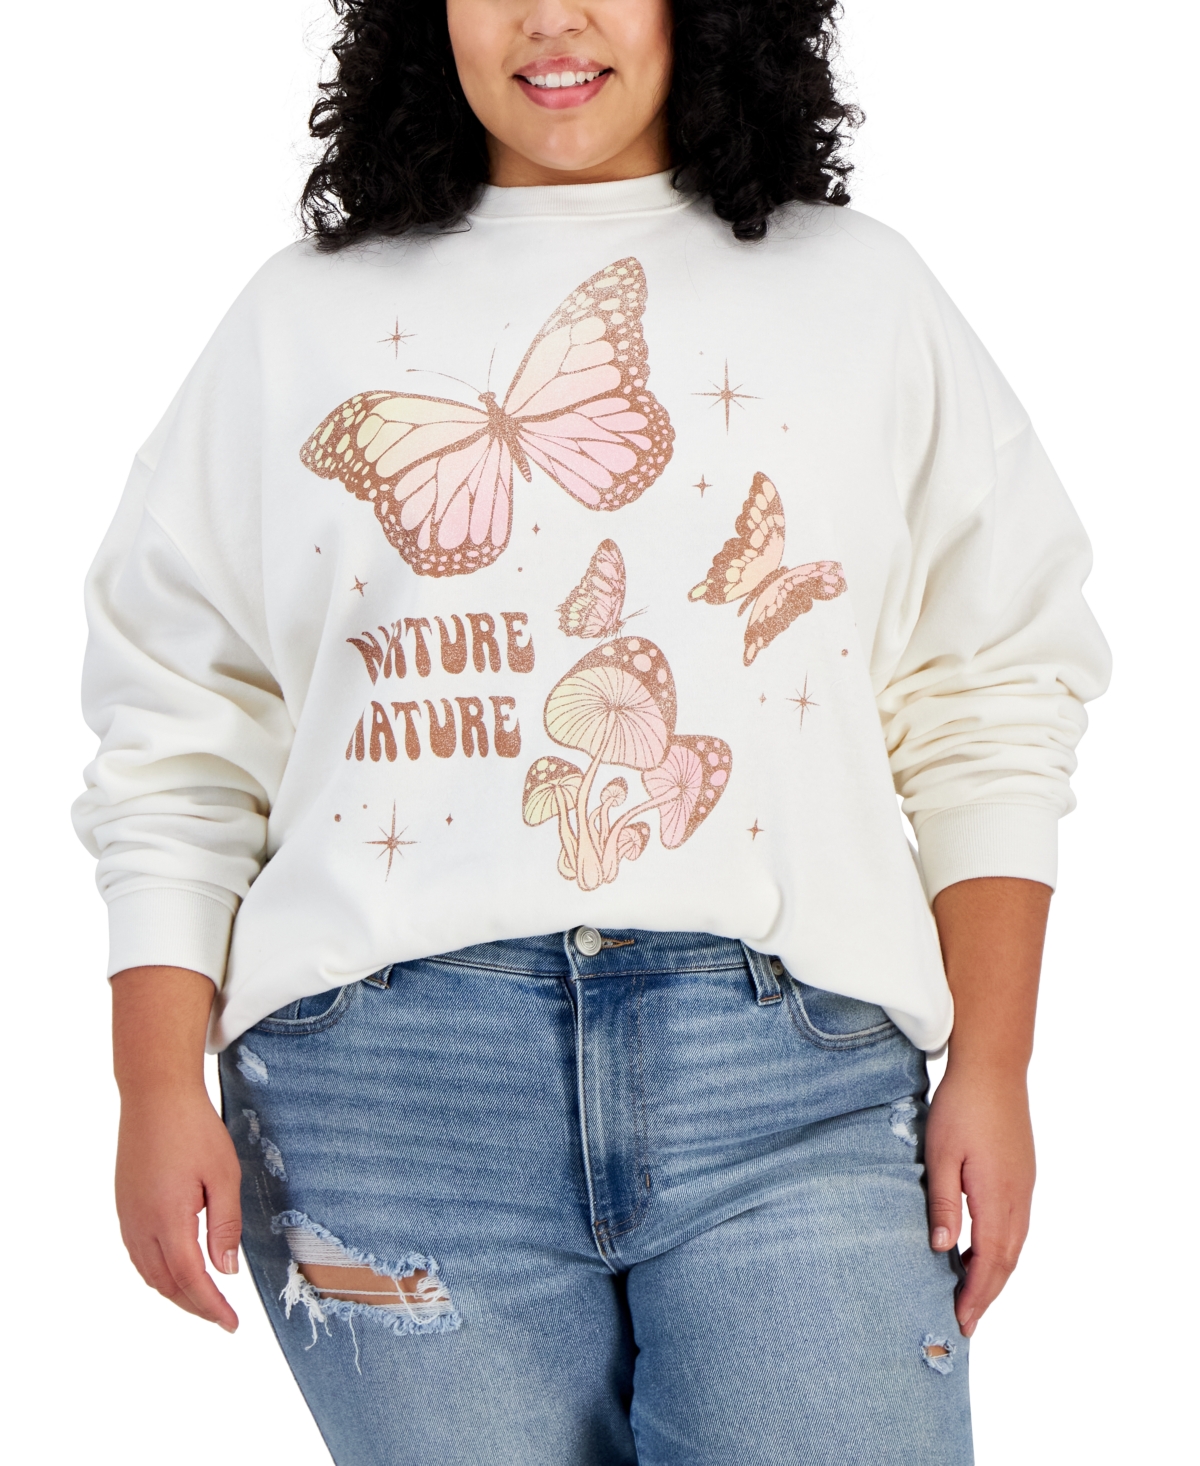 Trendy Plus Size Nurture Nature Sweatshirt - Off White